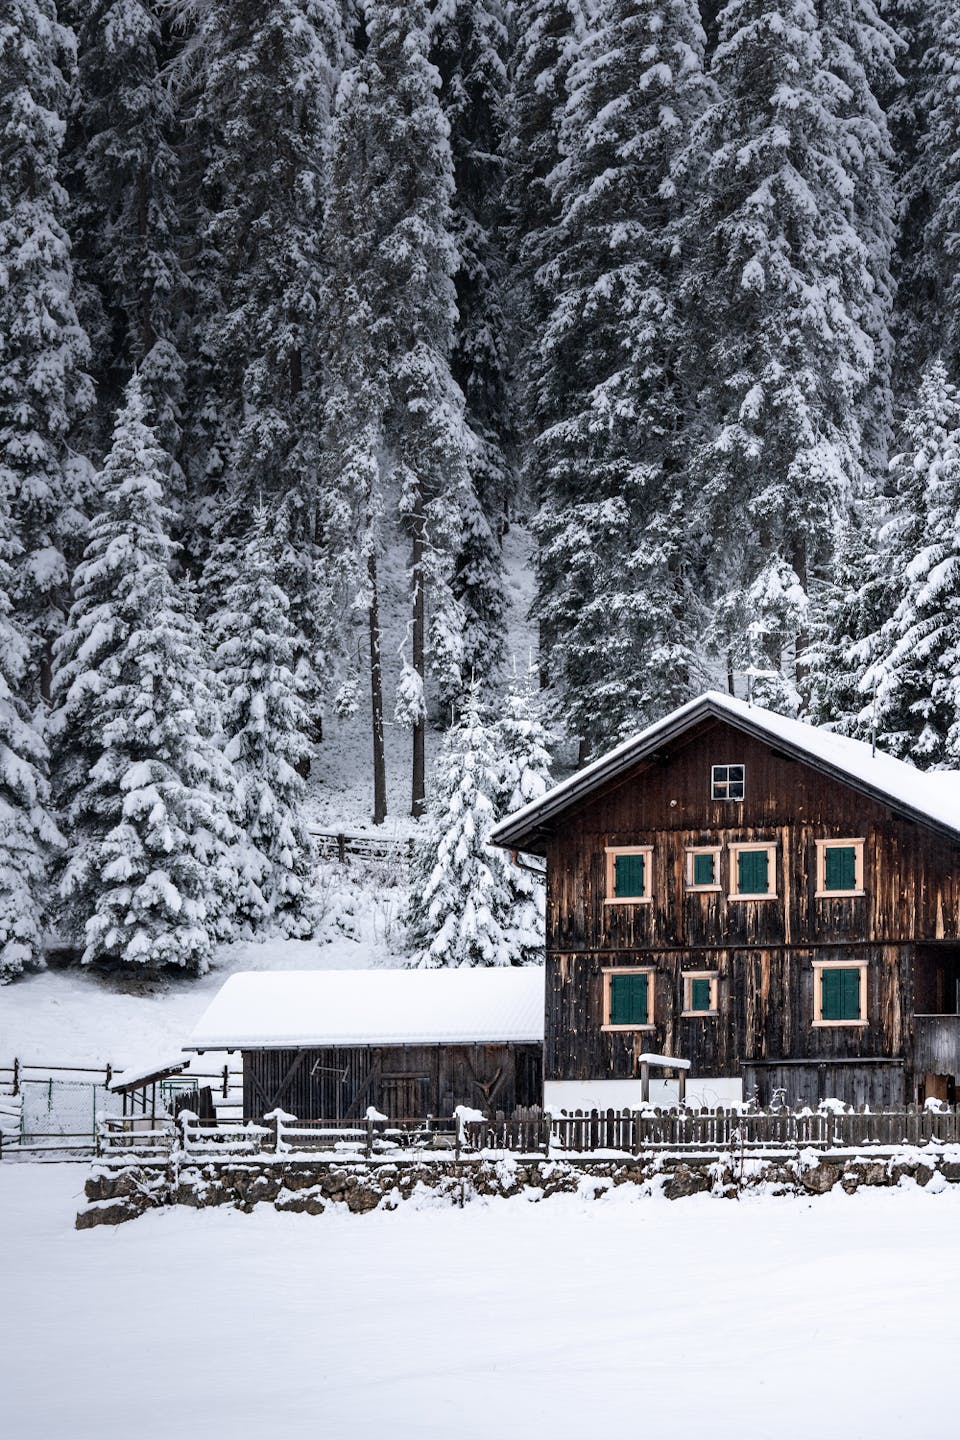 Snowy cabin in the Dolomites